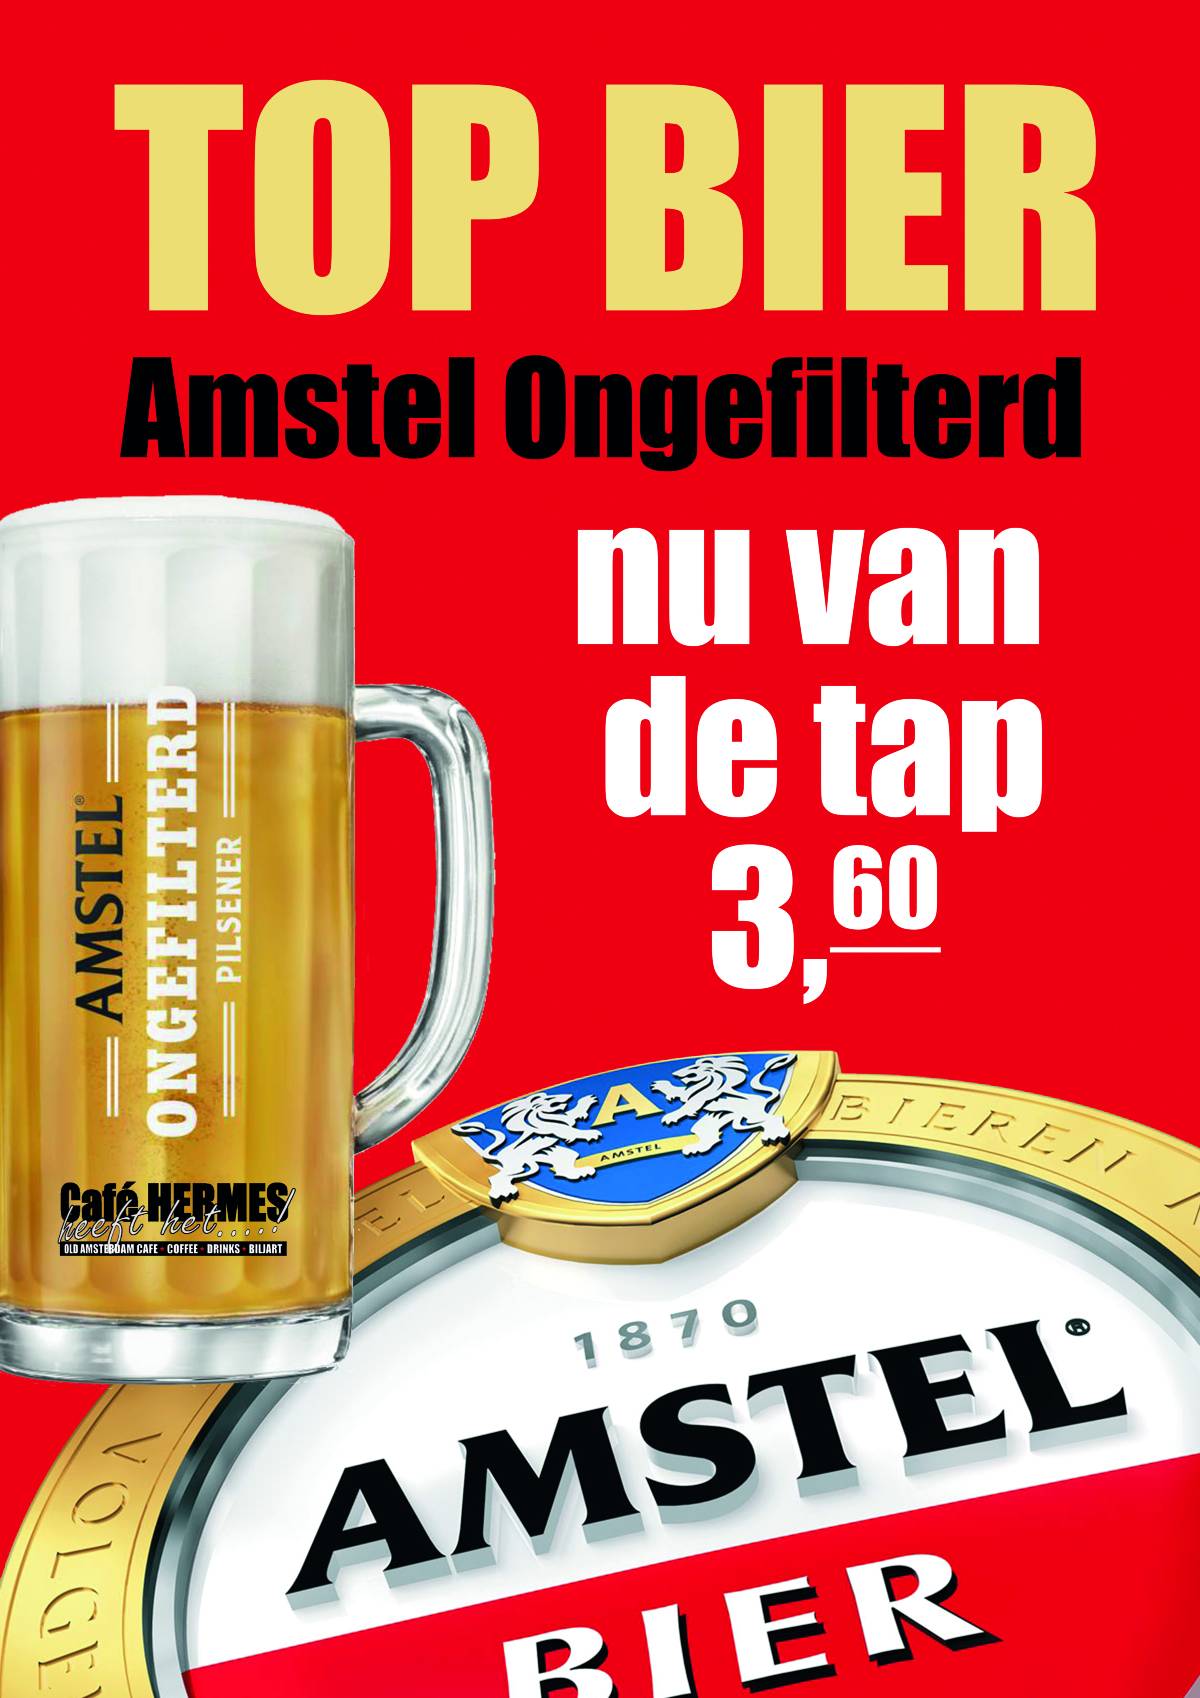 AMSTEL ONGEFILTERD-poster